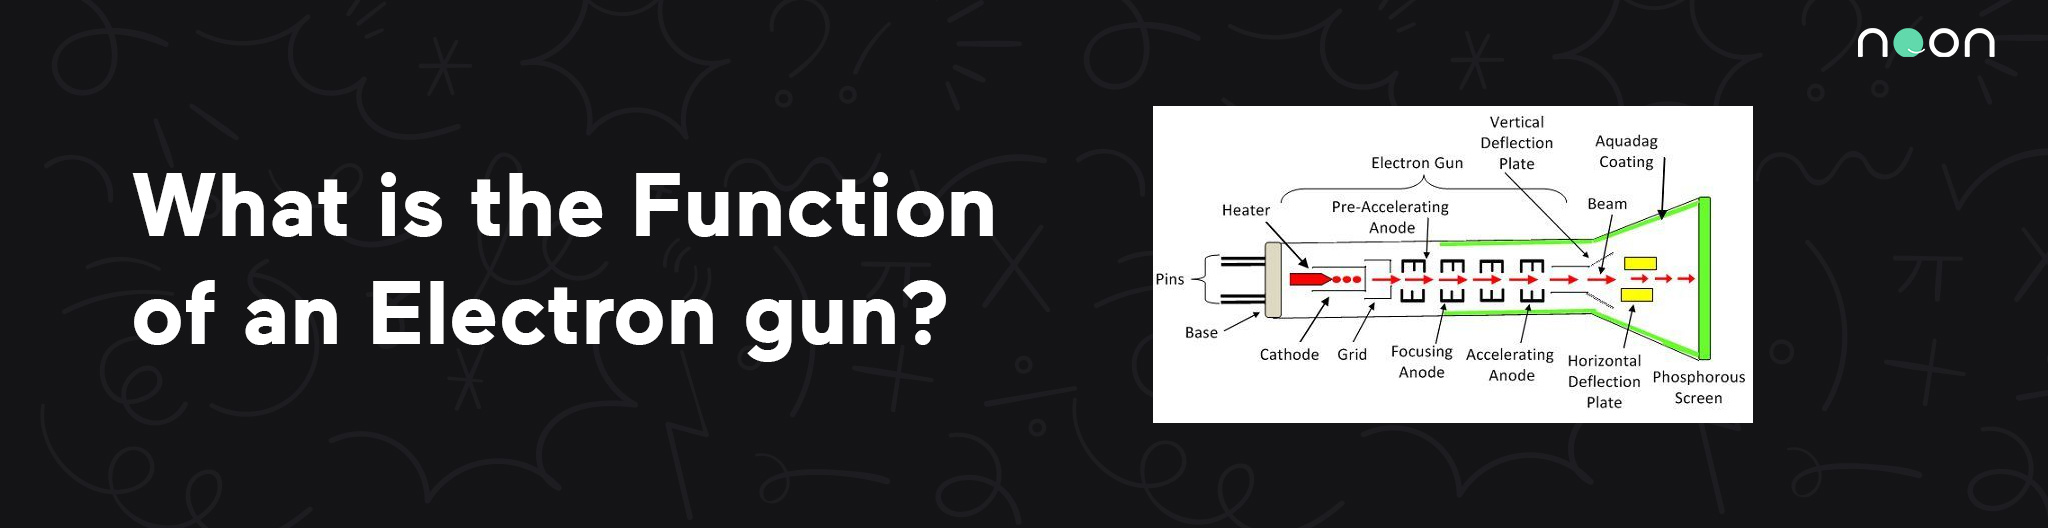 Function of an Electron gun